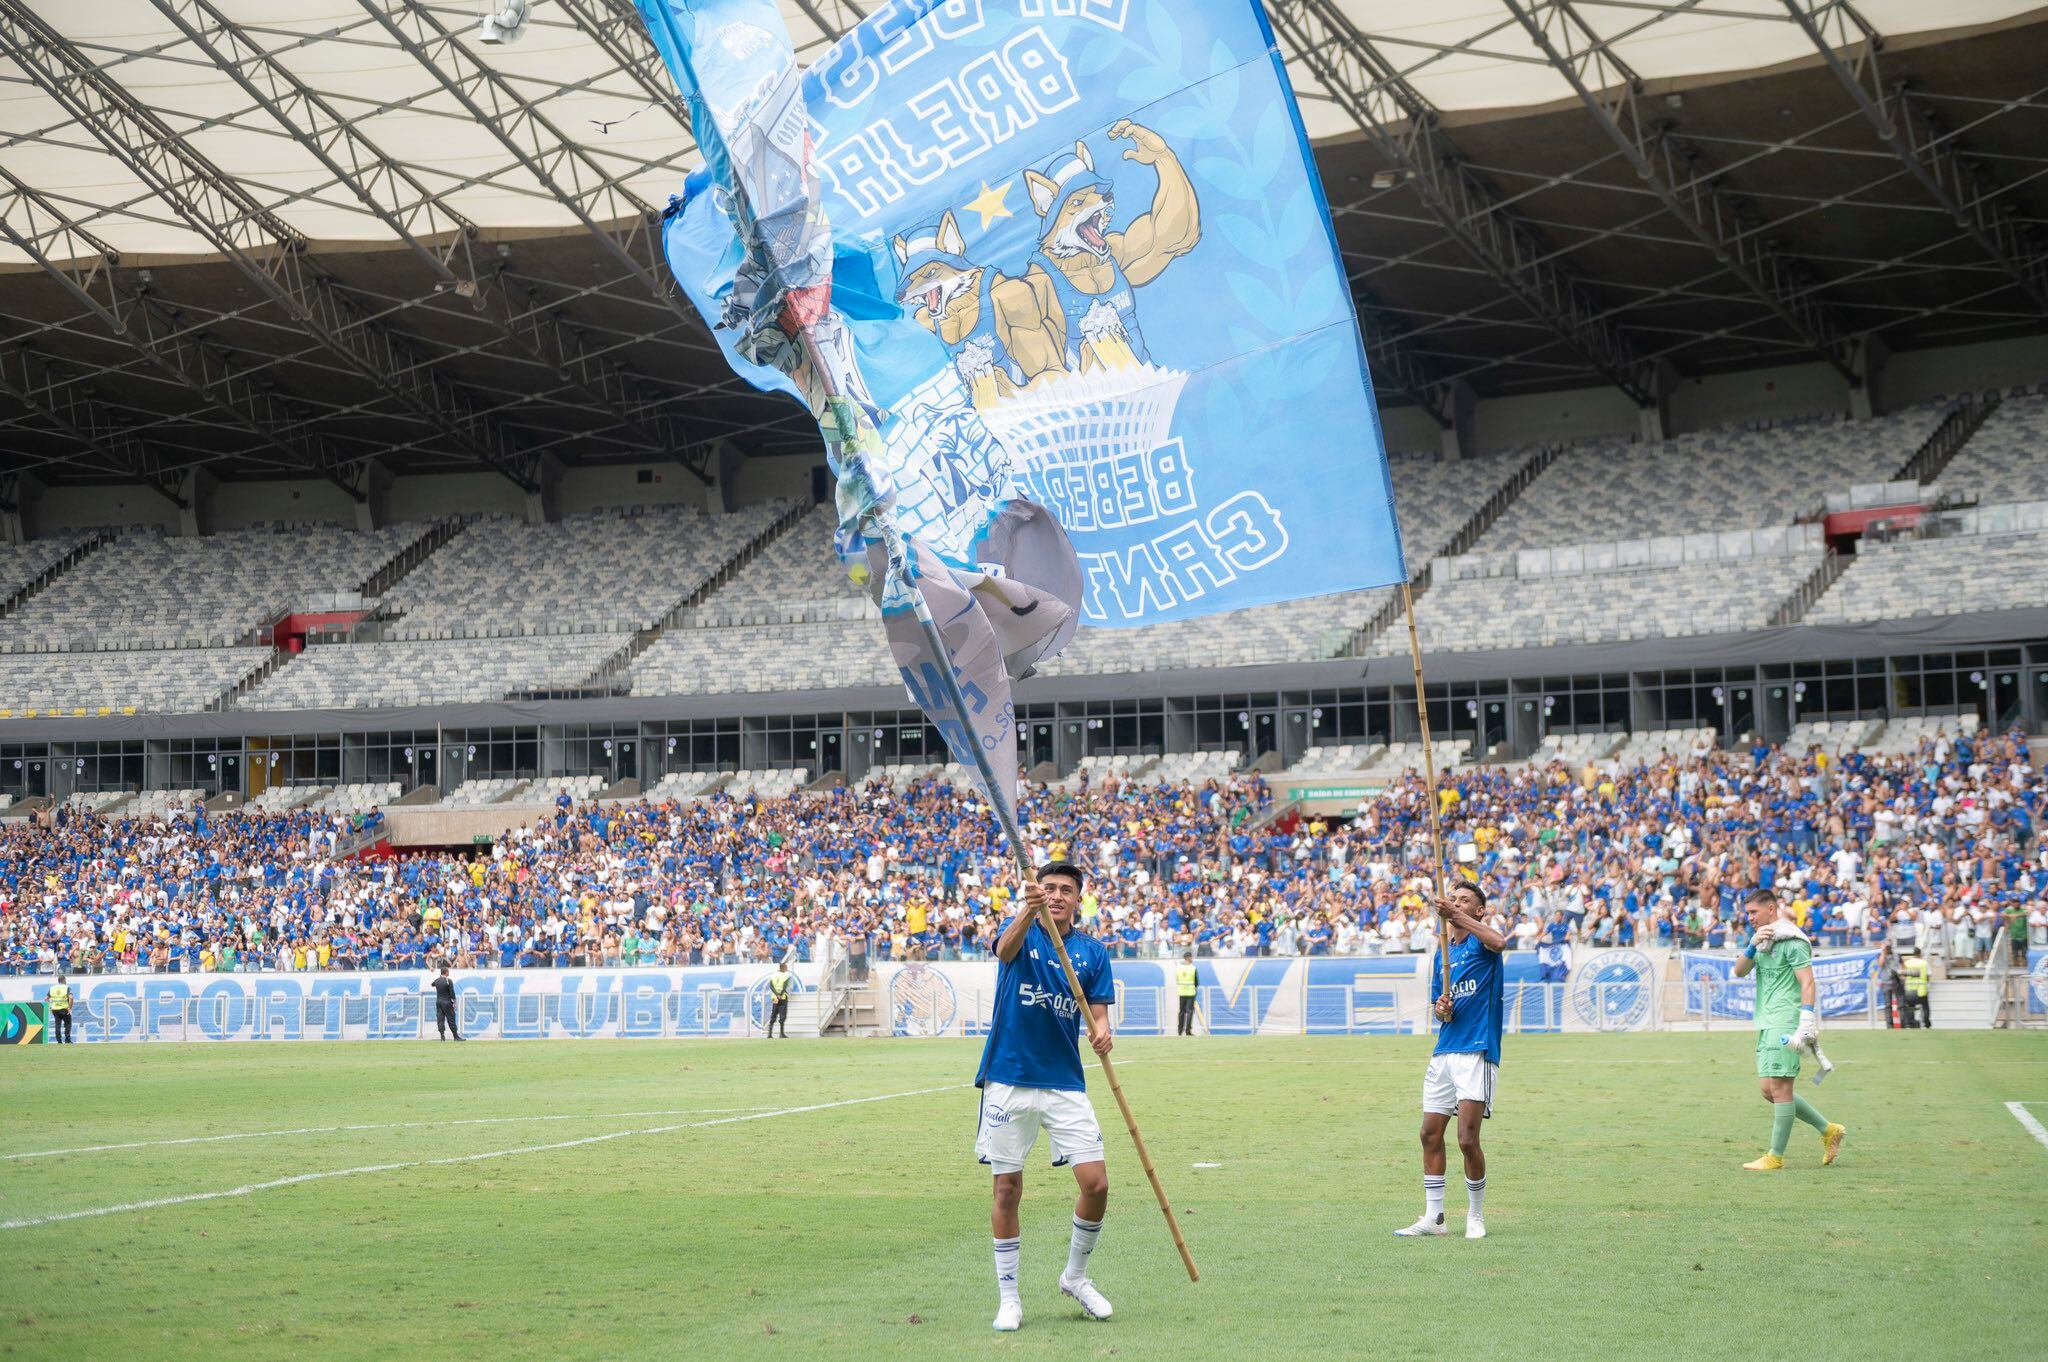 Carlos Gómez se ha ganado el cariño de la 'Nacao Azul'. - Crédito: Cruzeiro.